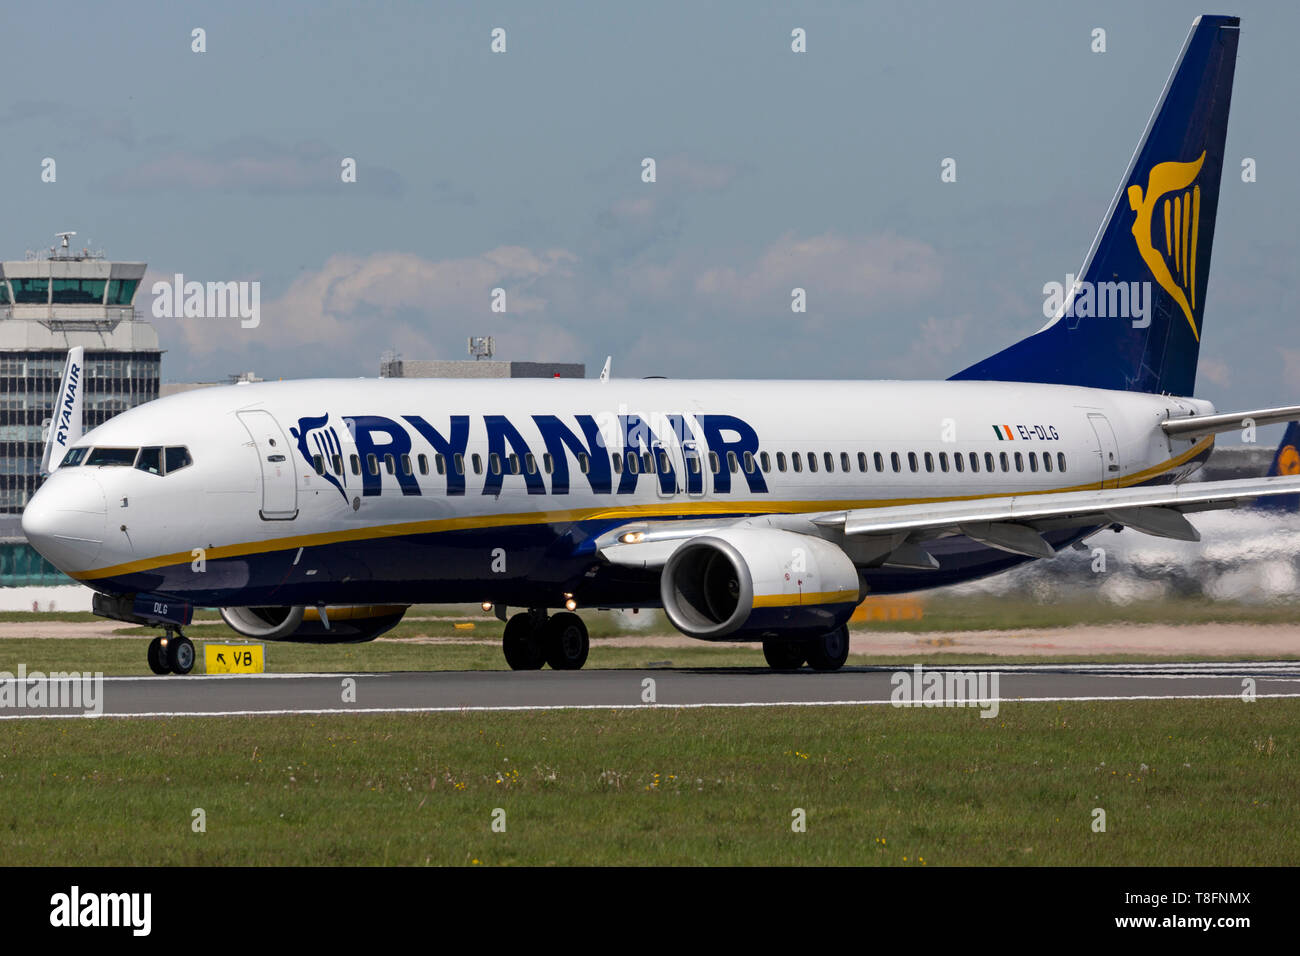 Ryanair Boeing 737-800, registrazione EI-DLG, preparando per prendere il via all'Aeroporto di Manchester, Inghilterra. Foto Stock